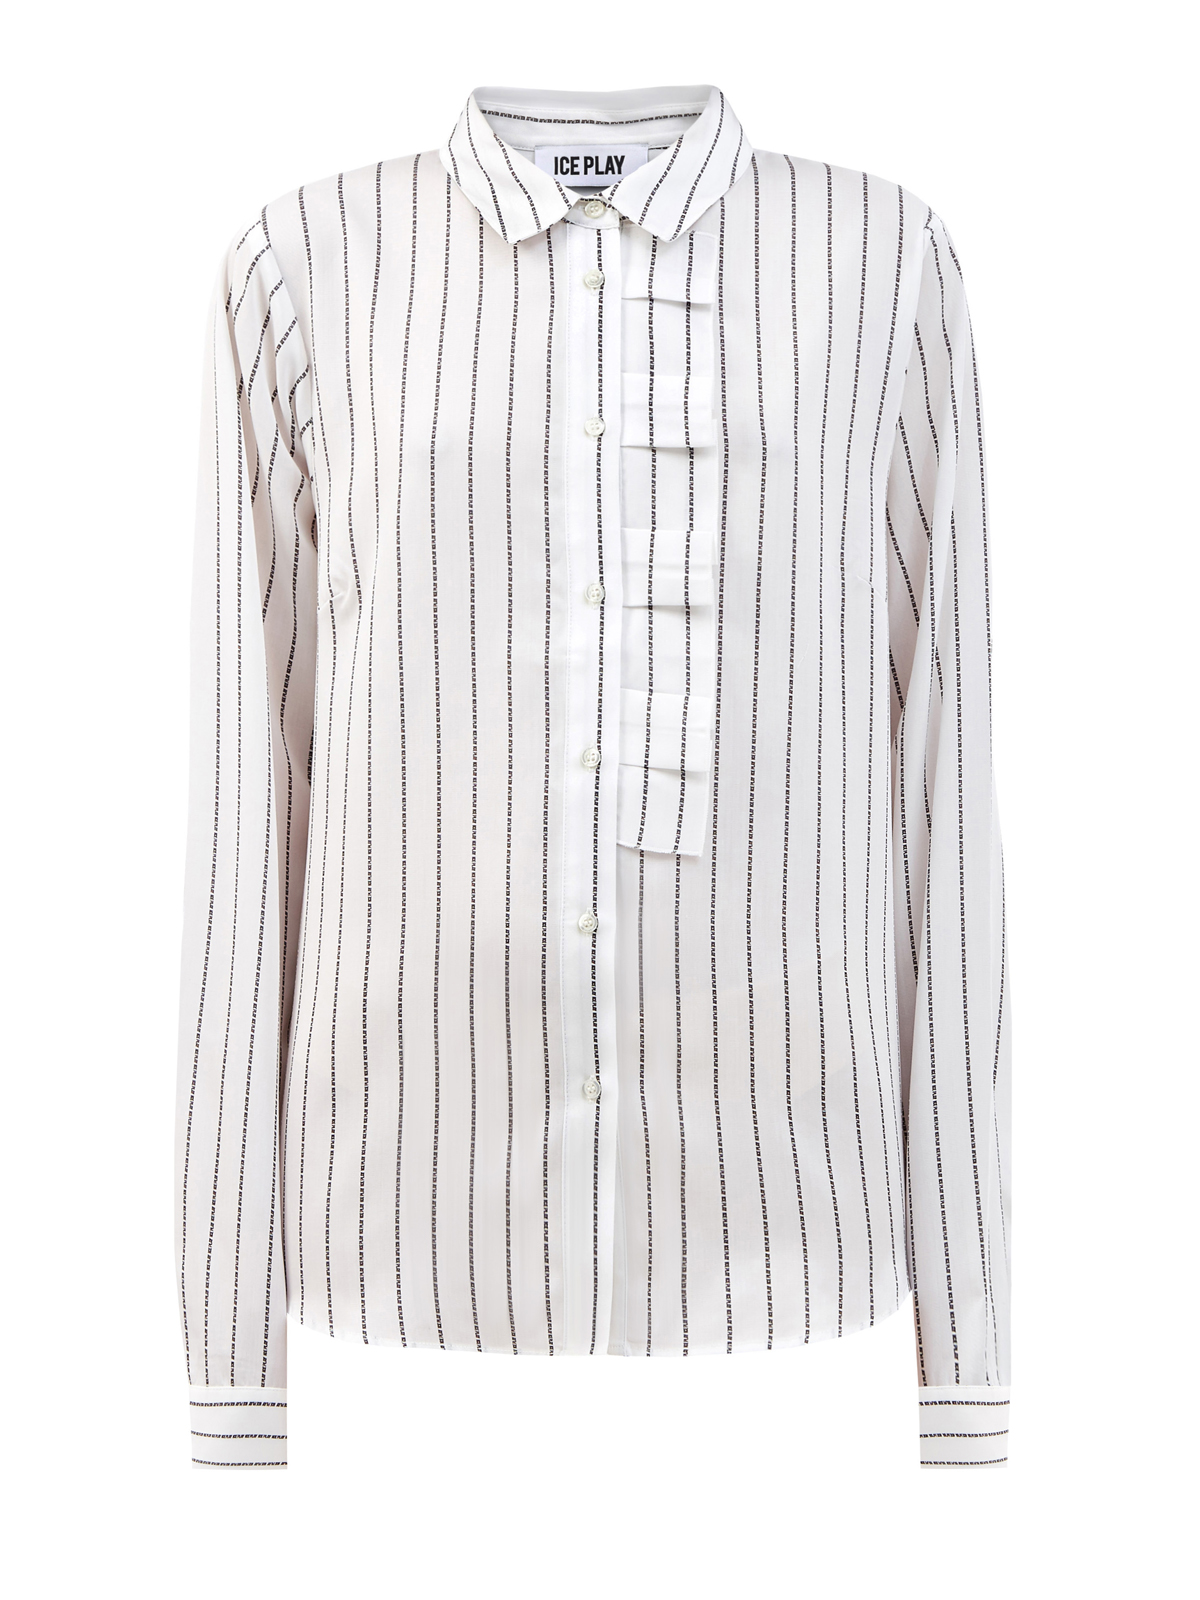 Элегантная рубашка из гладкого лиоцелла с принтом ICE PLAY, цвет белый, размер S;M;L;XL - фото 1